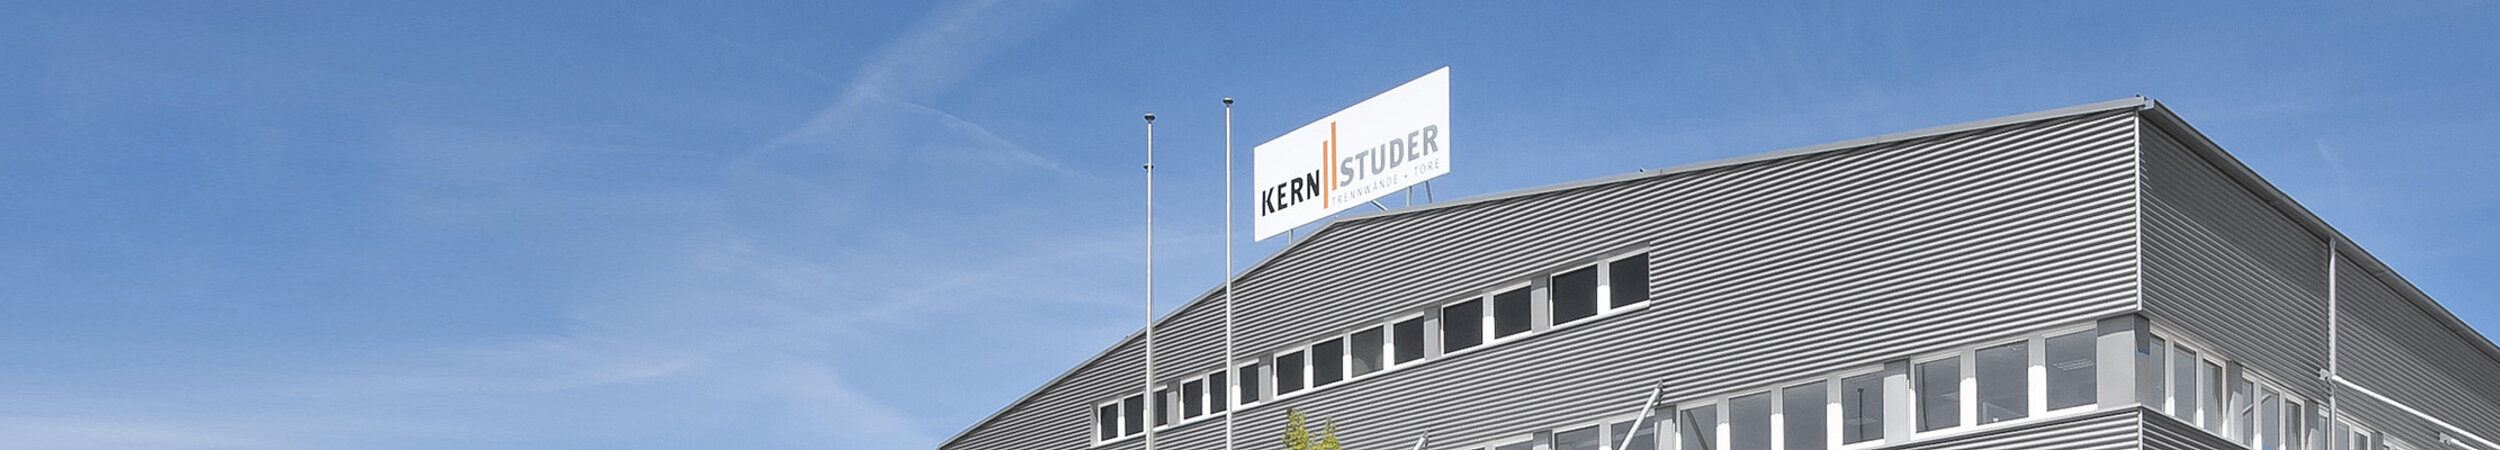 Kern_Studer_AG_Firmensitz_Samstagern_neu_1.jpg